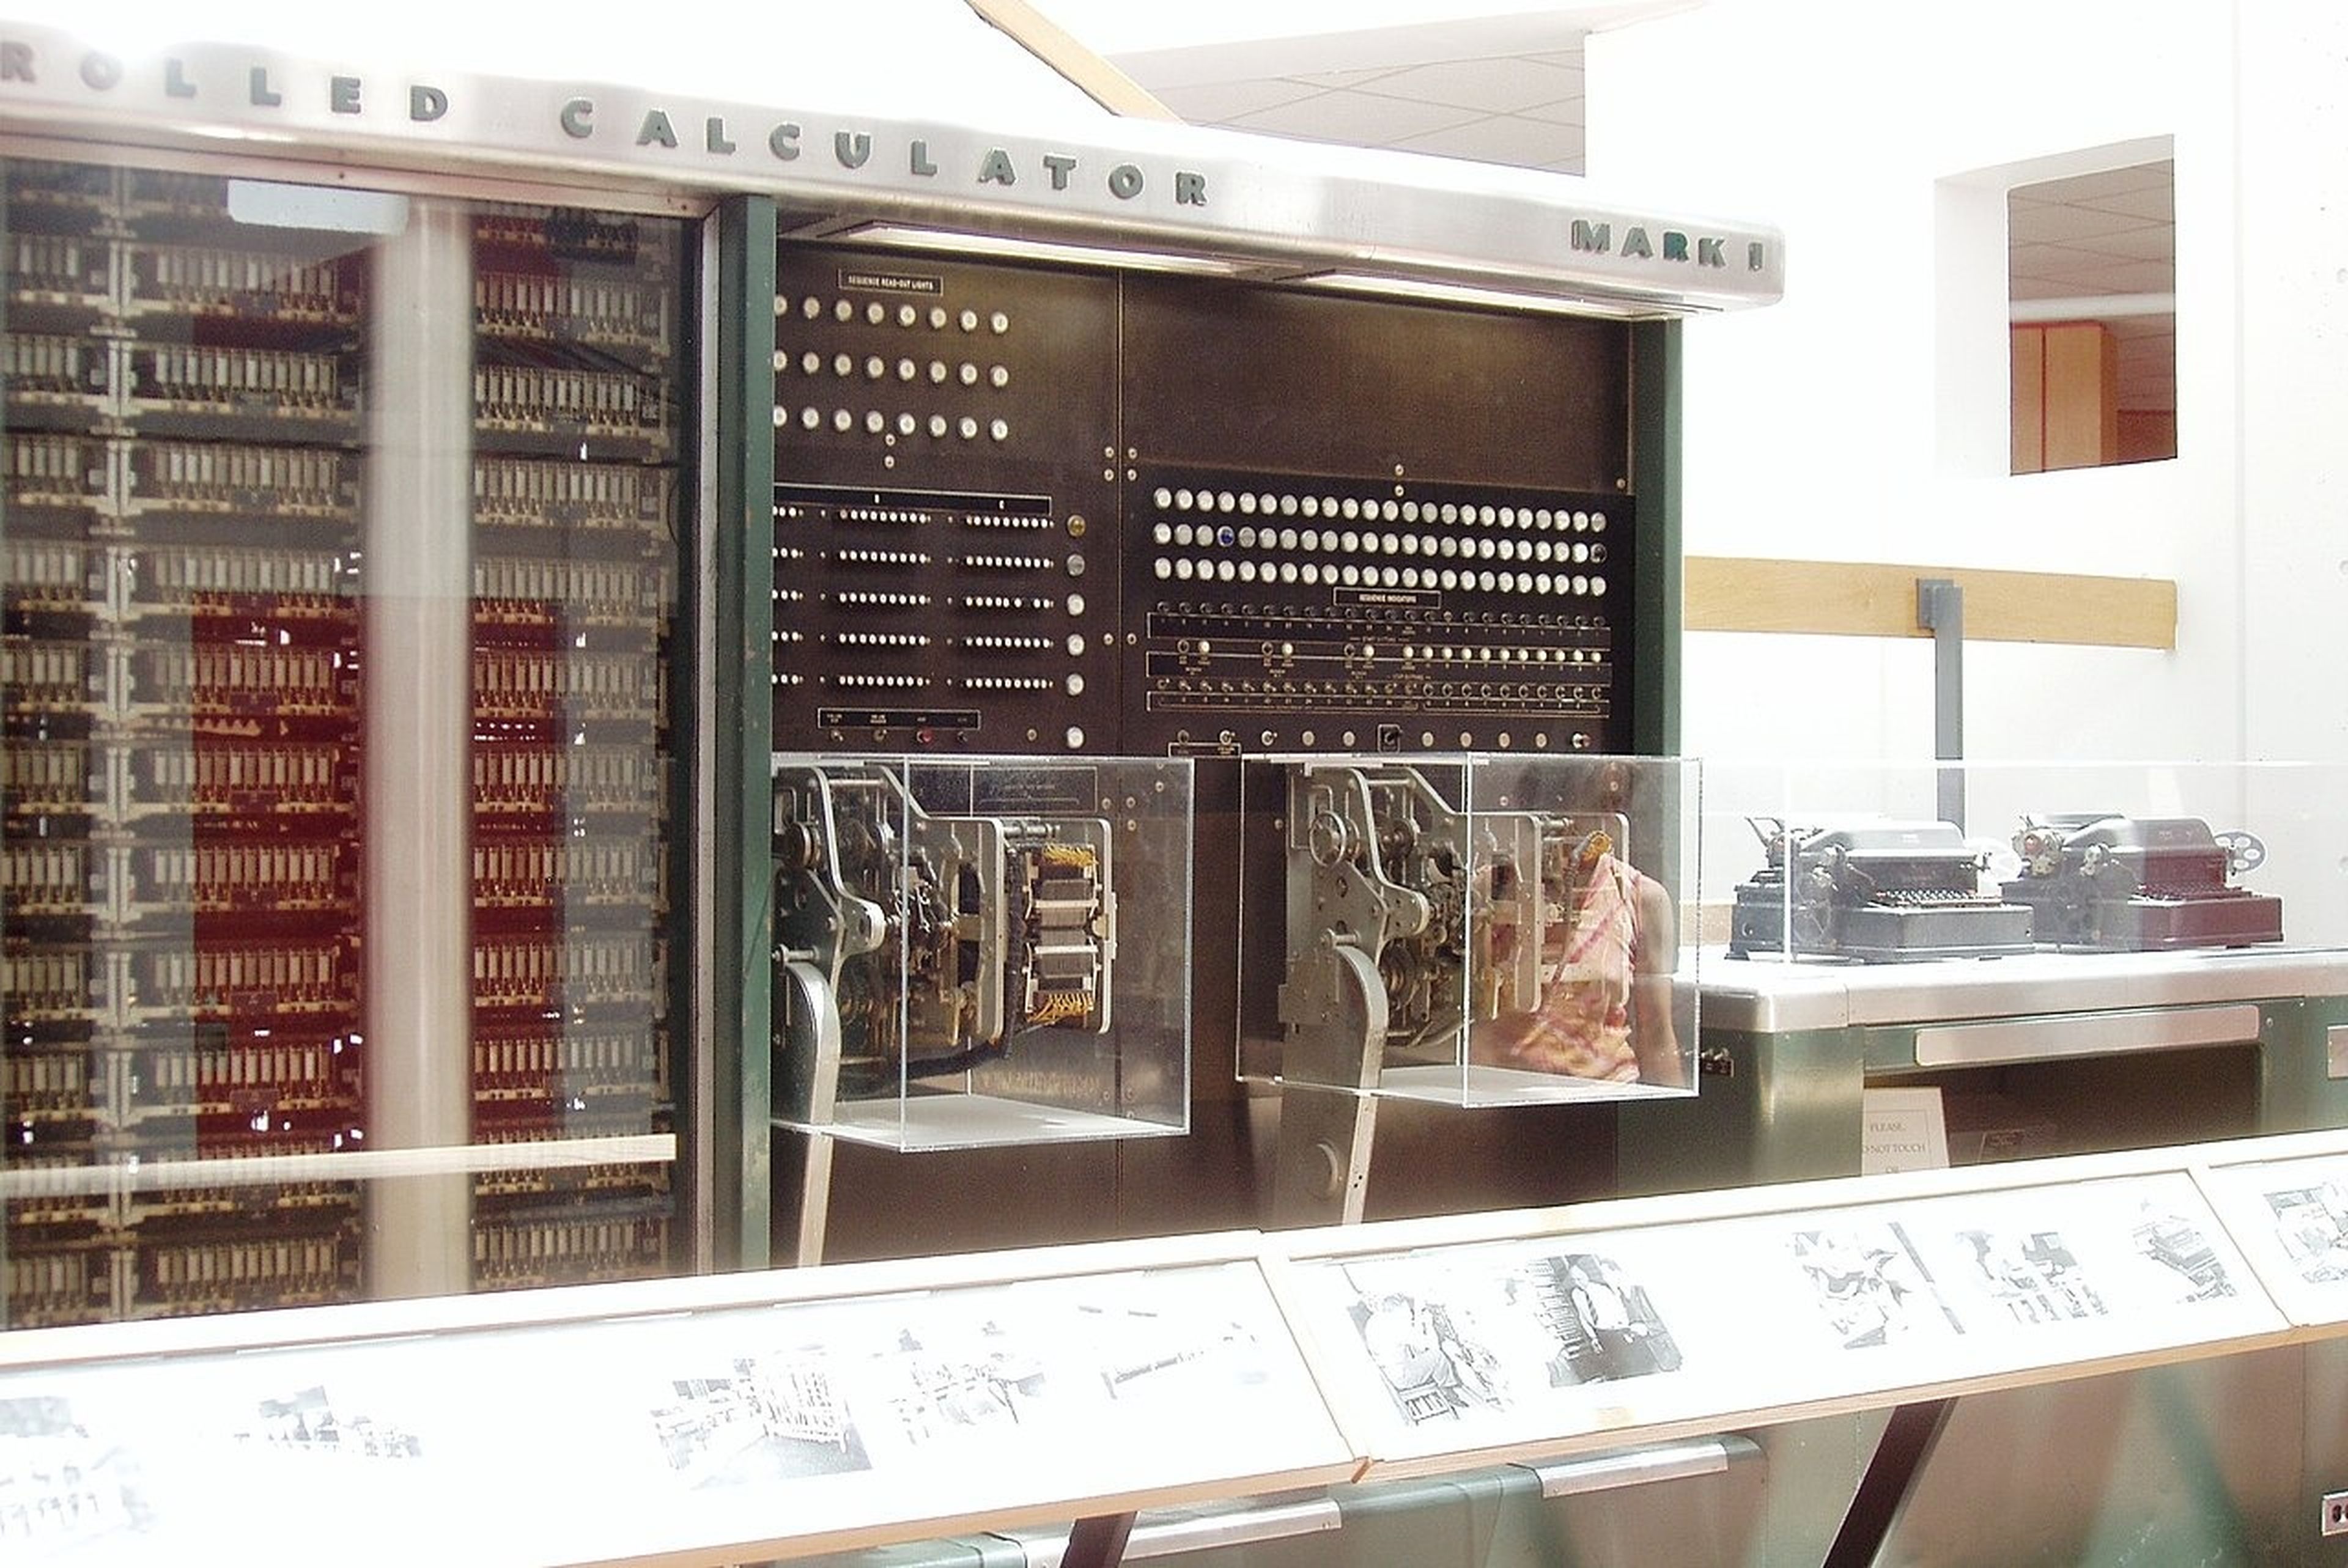 Hace 78 años nació el IBM Mark I, así era este gran ordenador electromecánico